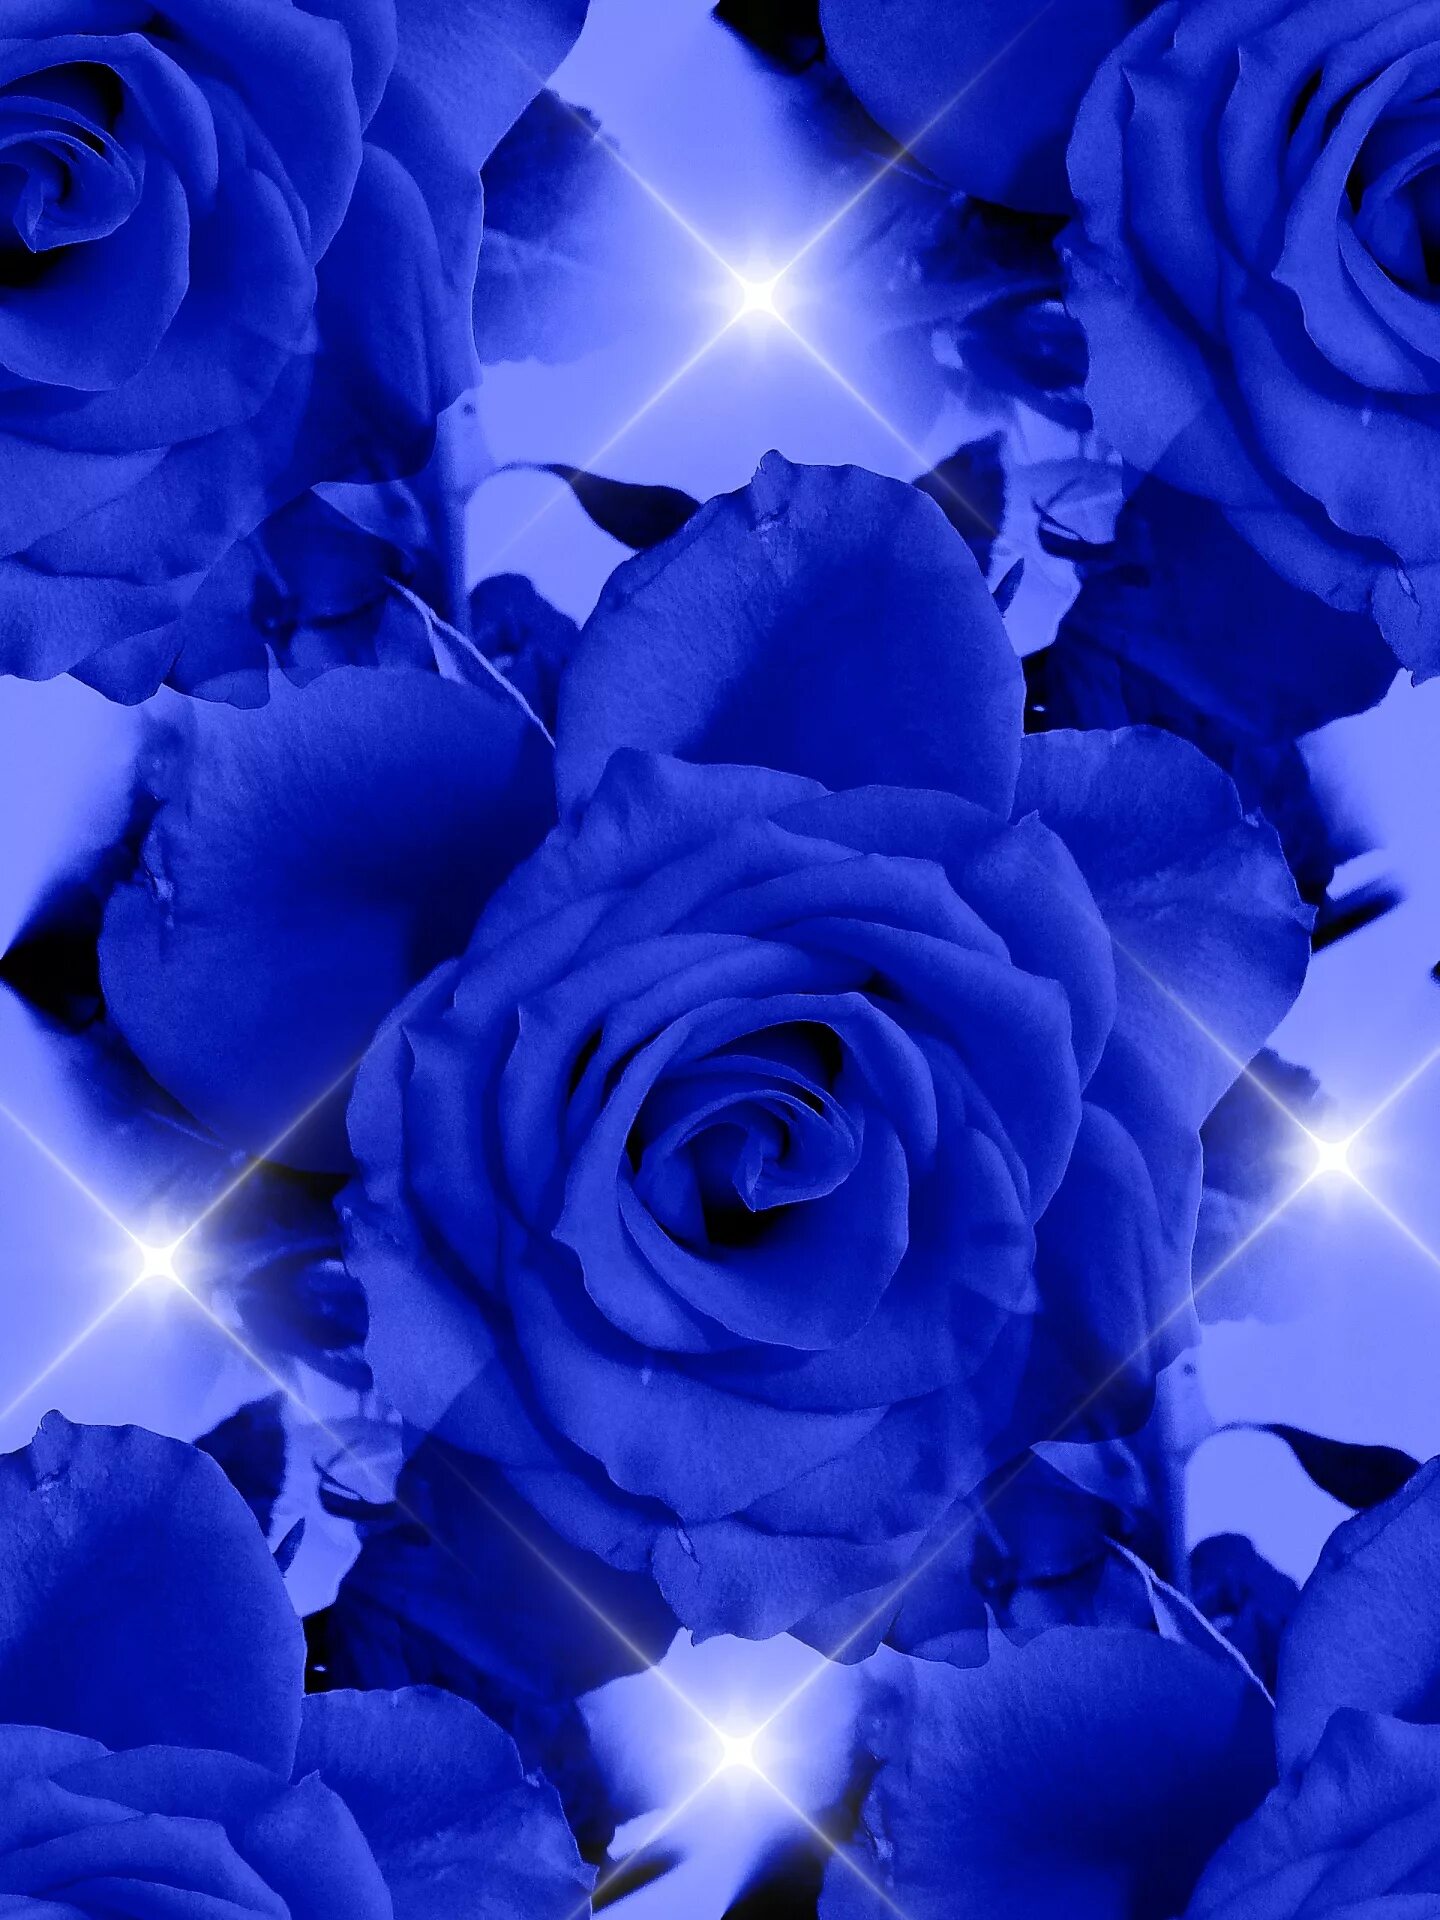 Flower shining. Красивые синие цветы.